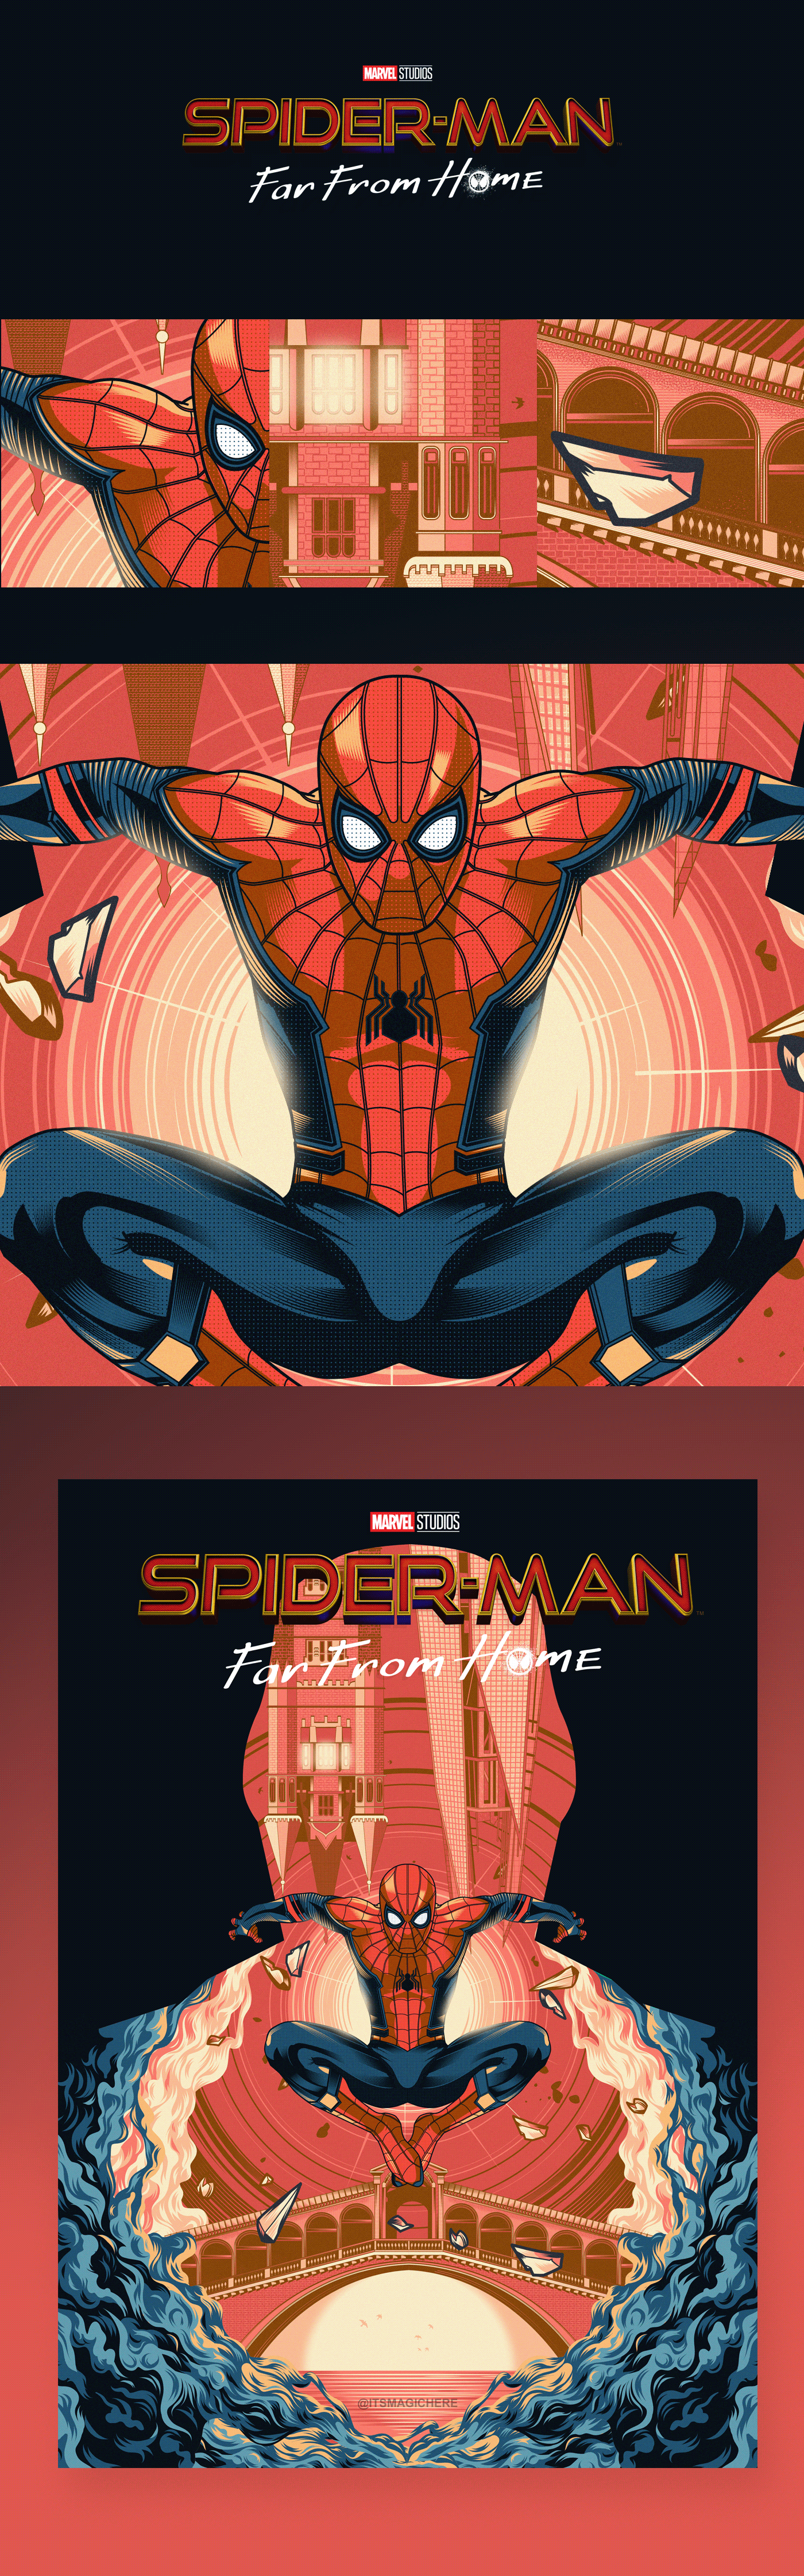 spiderman poster marvel movie Avengers alternative poster far from home ILLUSTRATION 